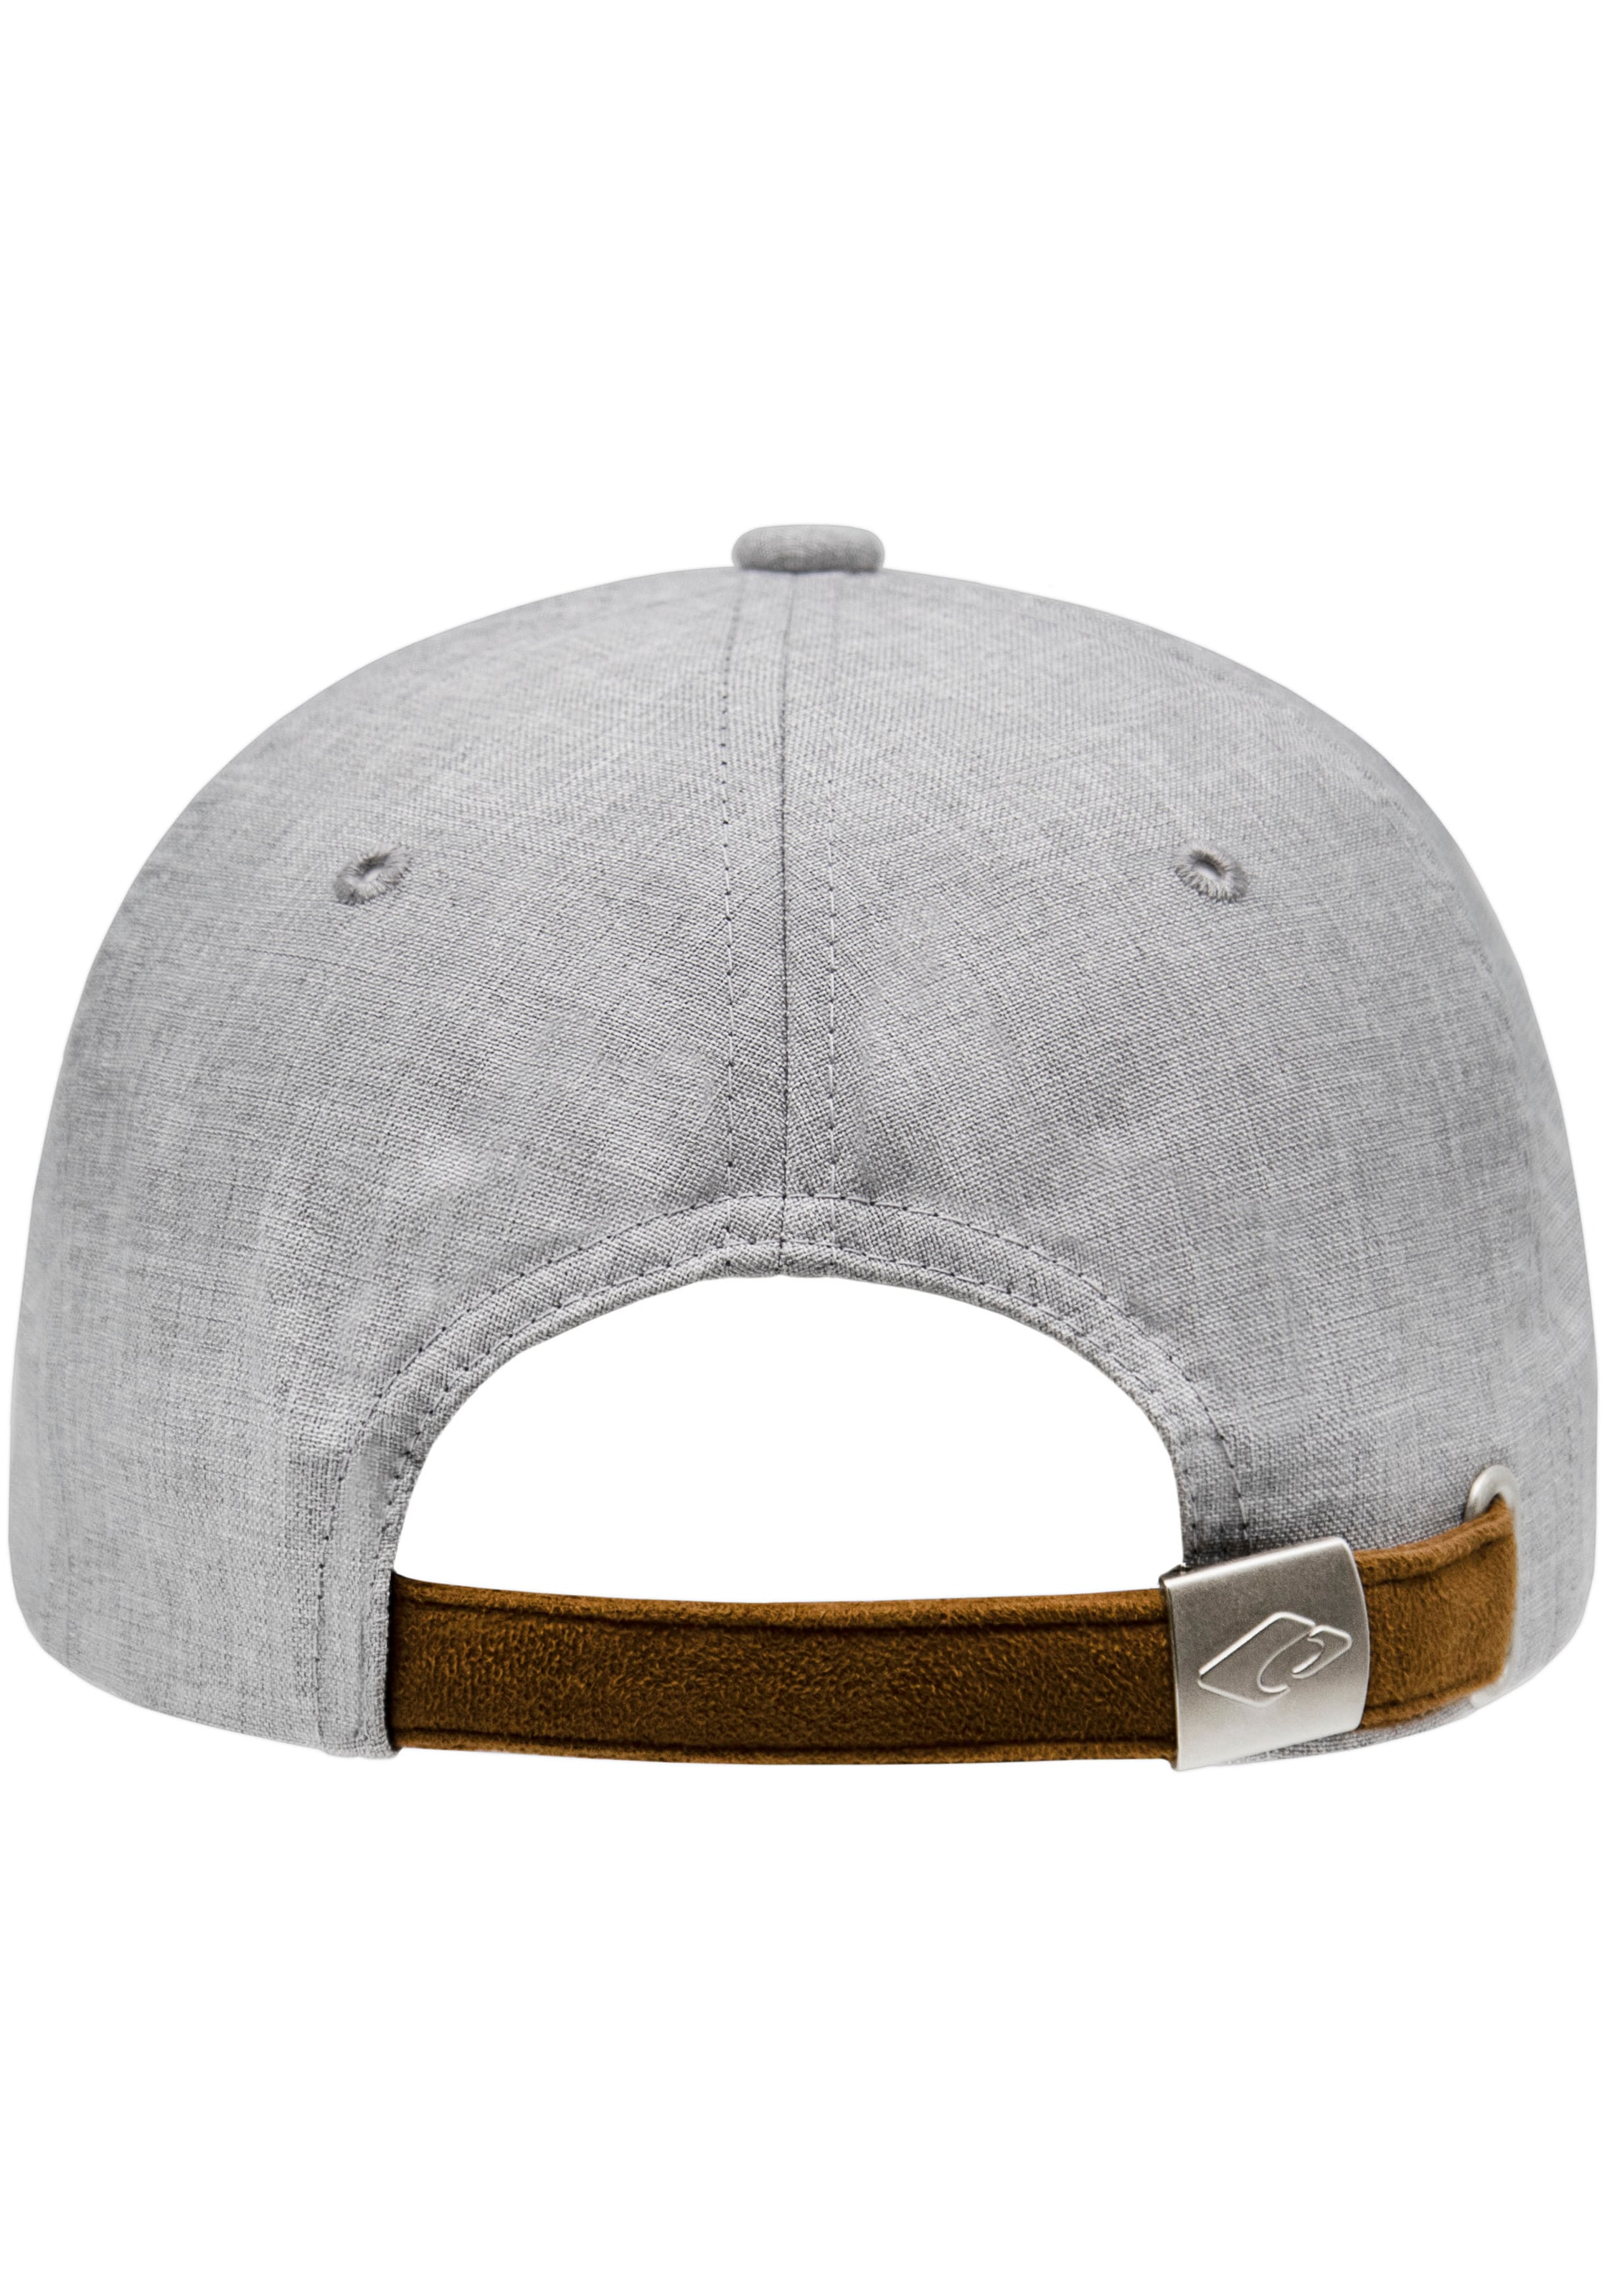 chillouts Baseball Cap, | Optik, Online One Hat verstellbar in melierter OTTO Shop kaufen Amadora Size, OTTO im